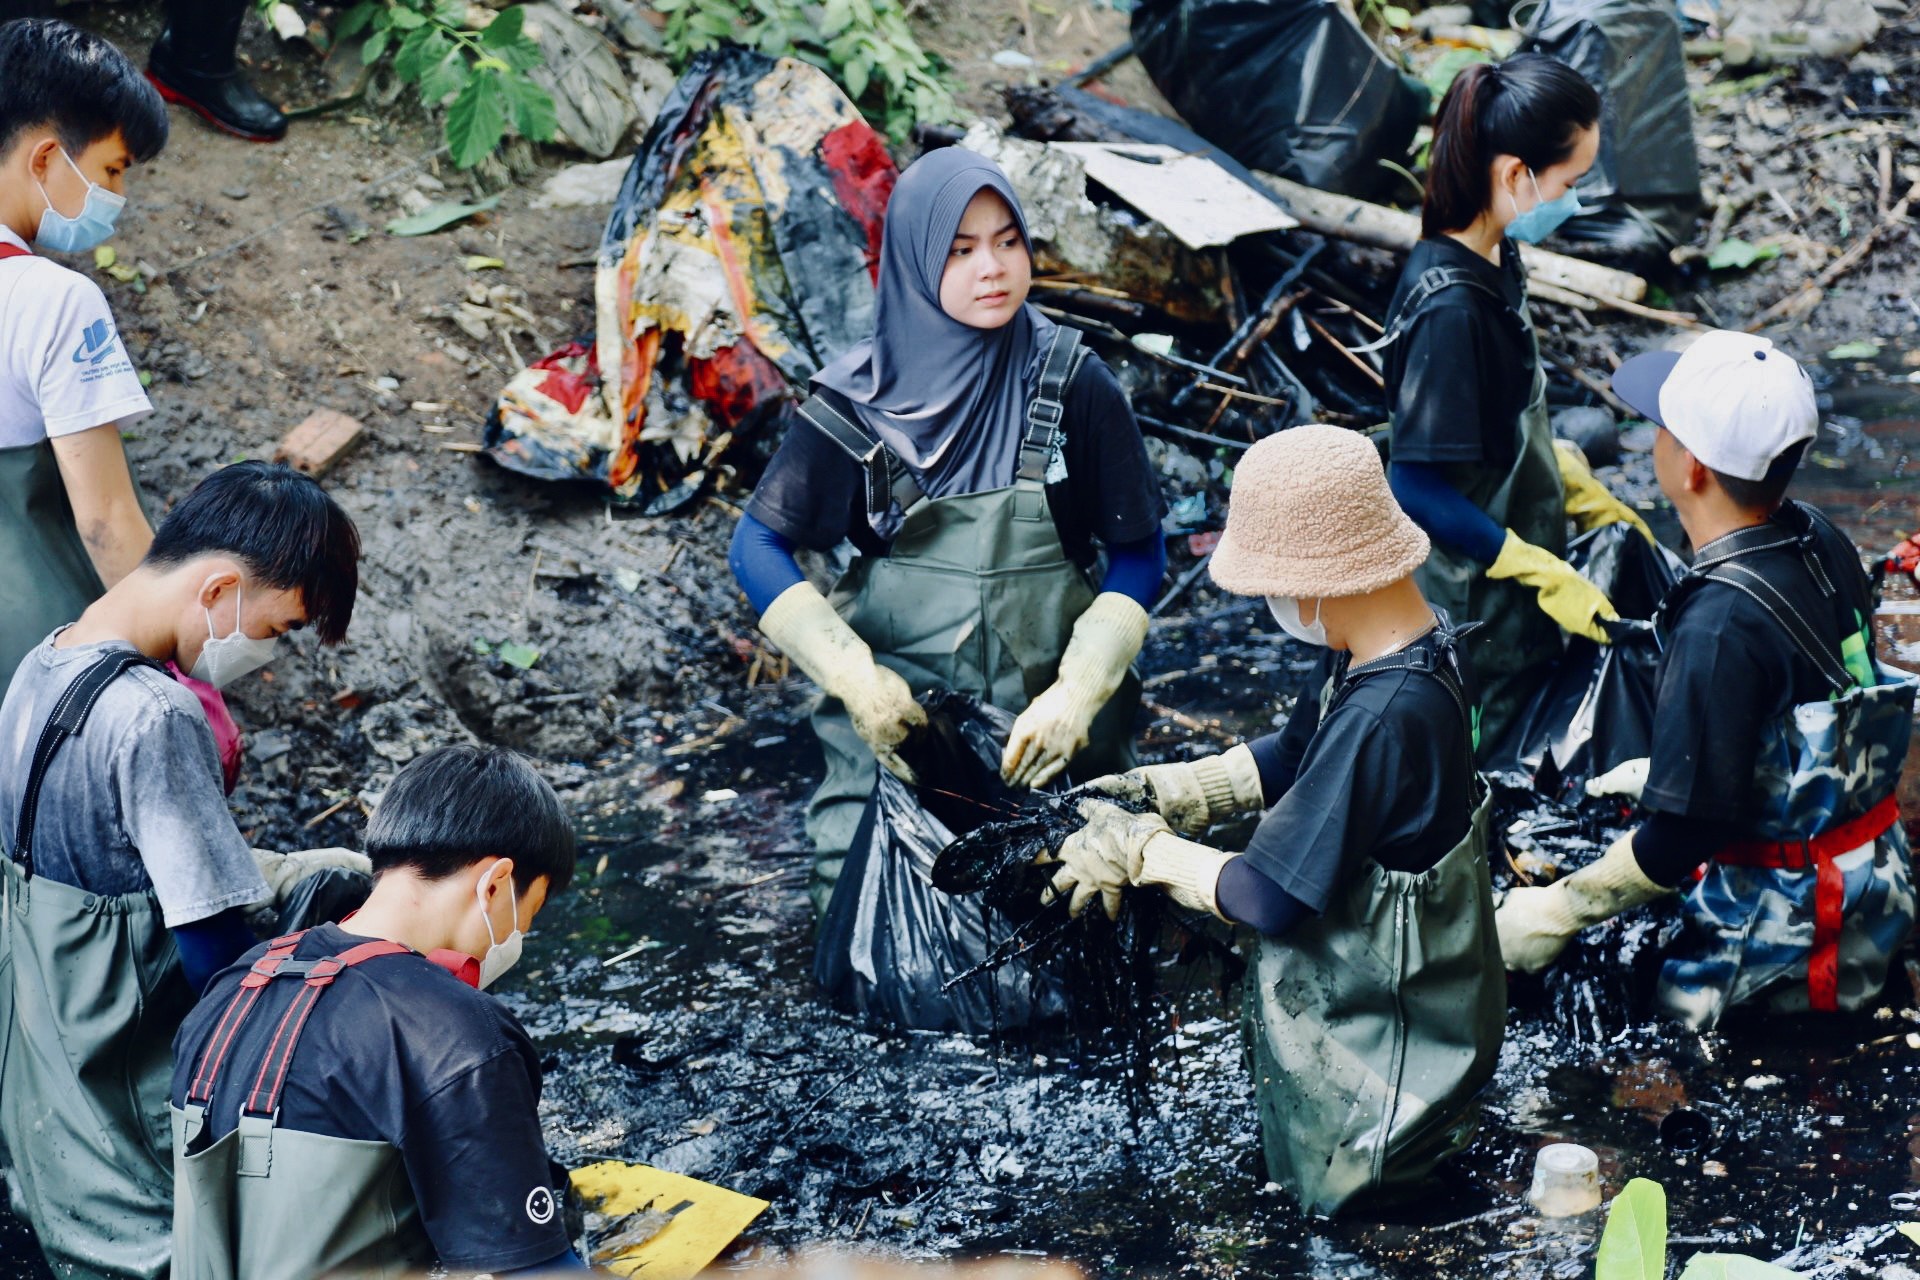 Biến kênh rạch hôi thối ở Sài Gòn trở nên sạch đẹp hơn, nhóm bạn trẻ mong người dân đừng vứt rác trở lại - Ảnh 11.